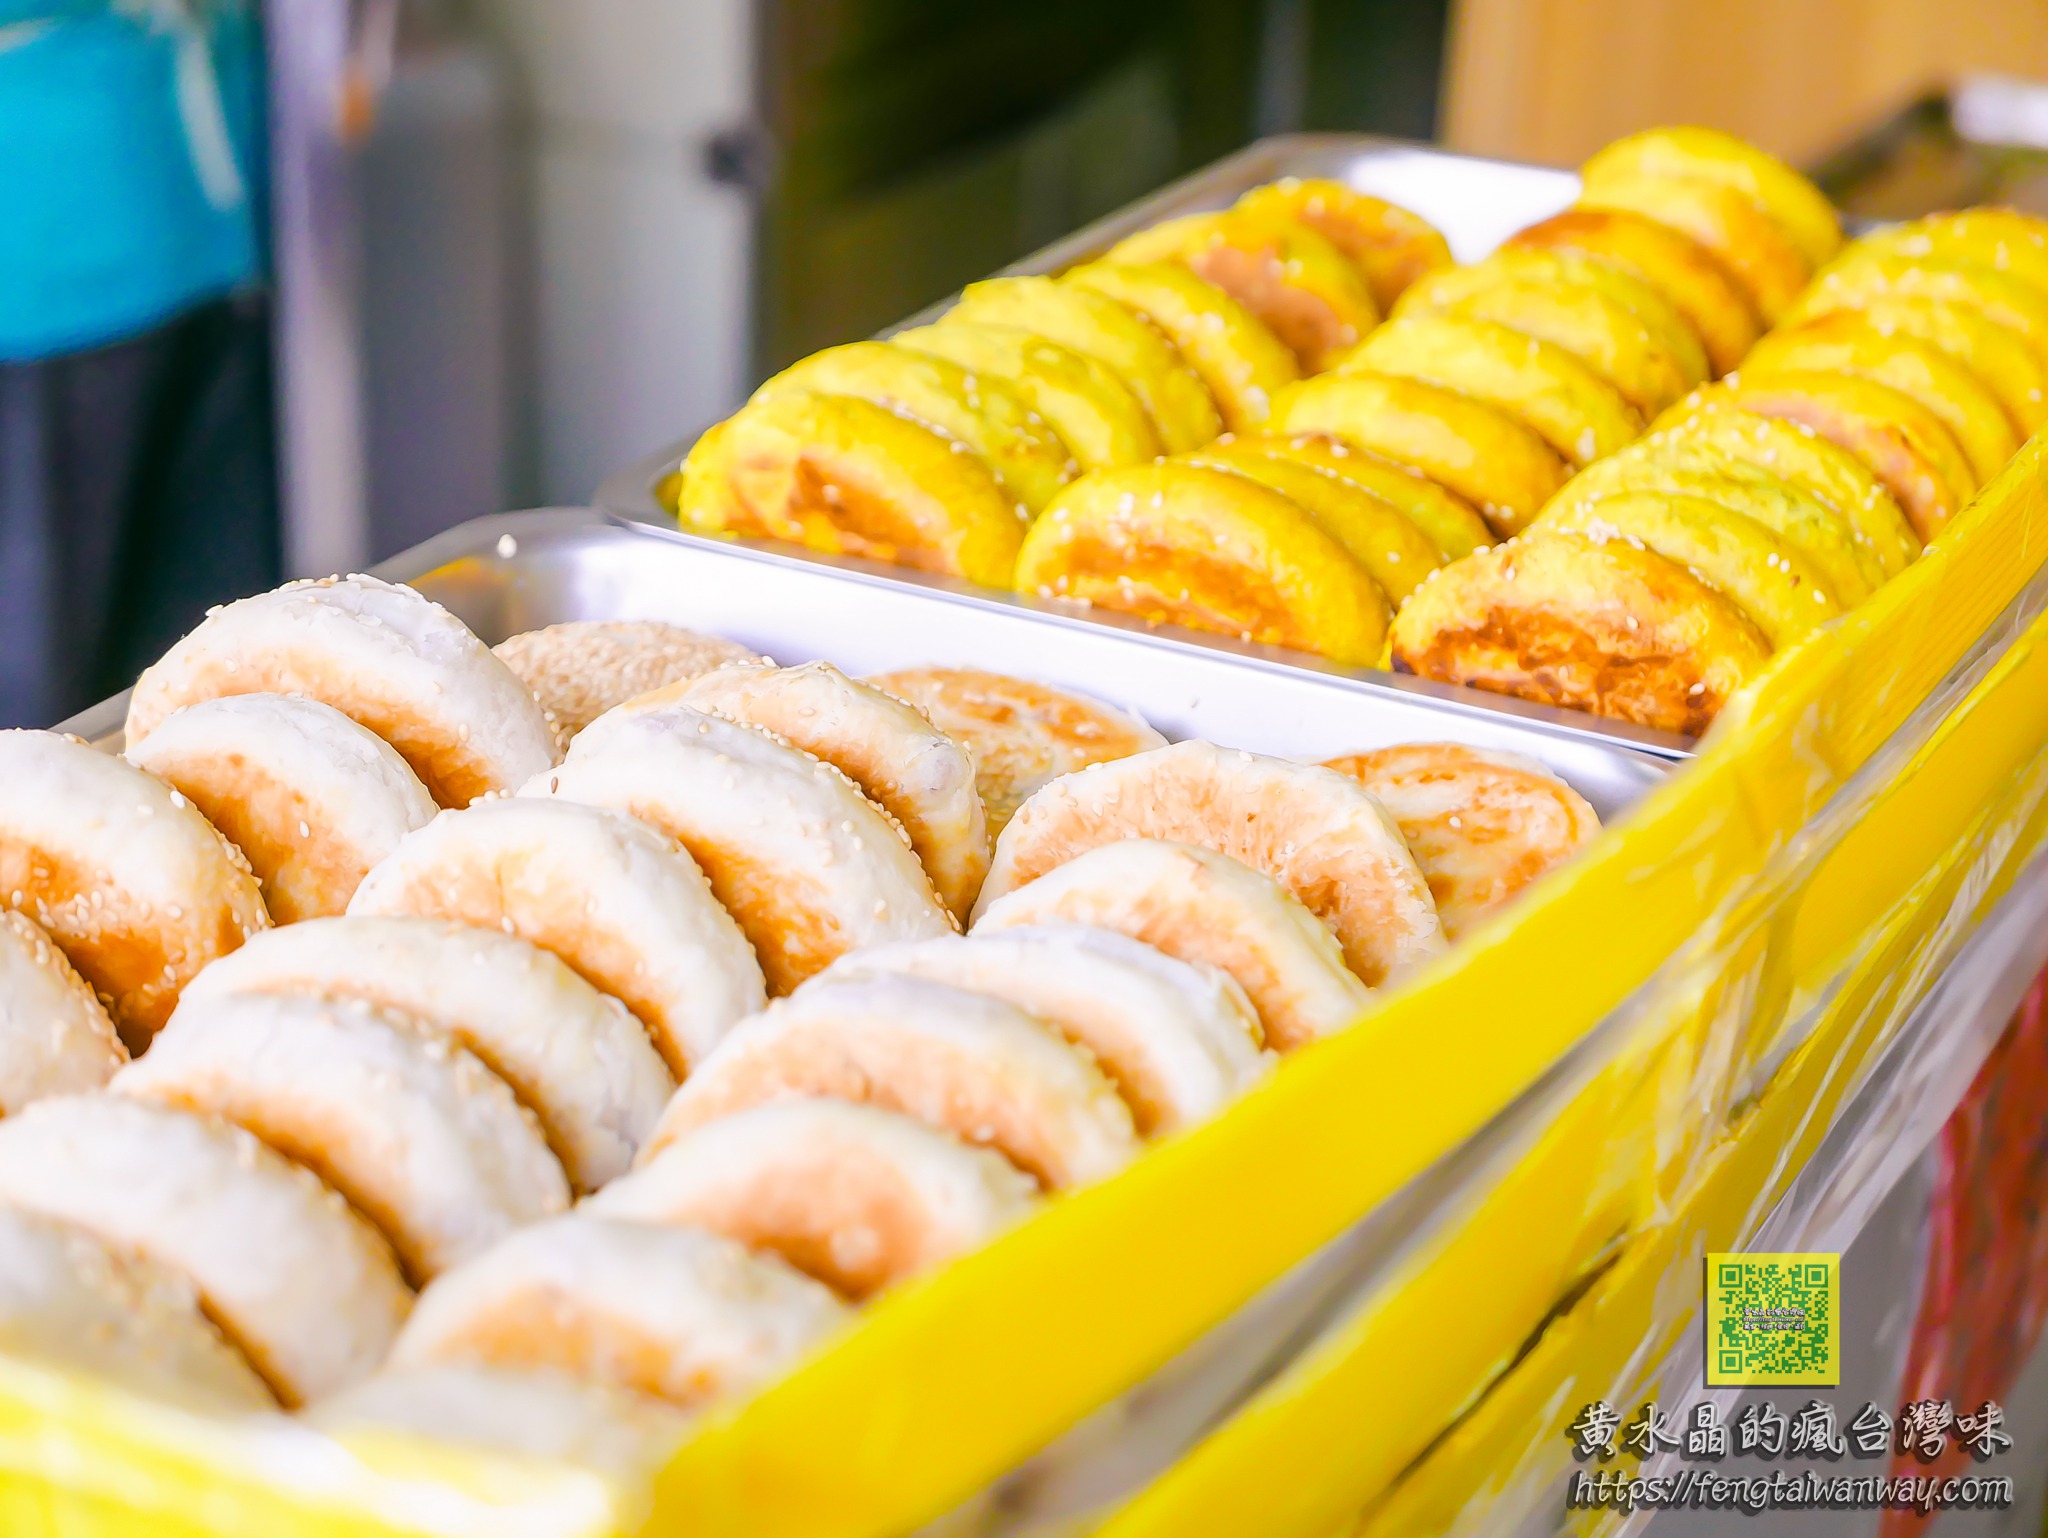 三赫老麵燒餅【台南美食】｜清晨6點就開賣的高人氣銅板價蔥花燒餅